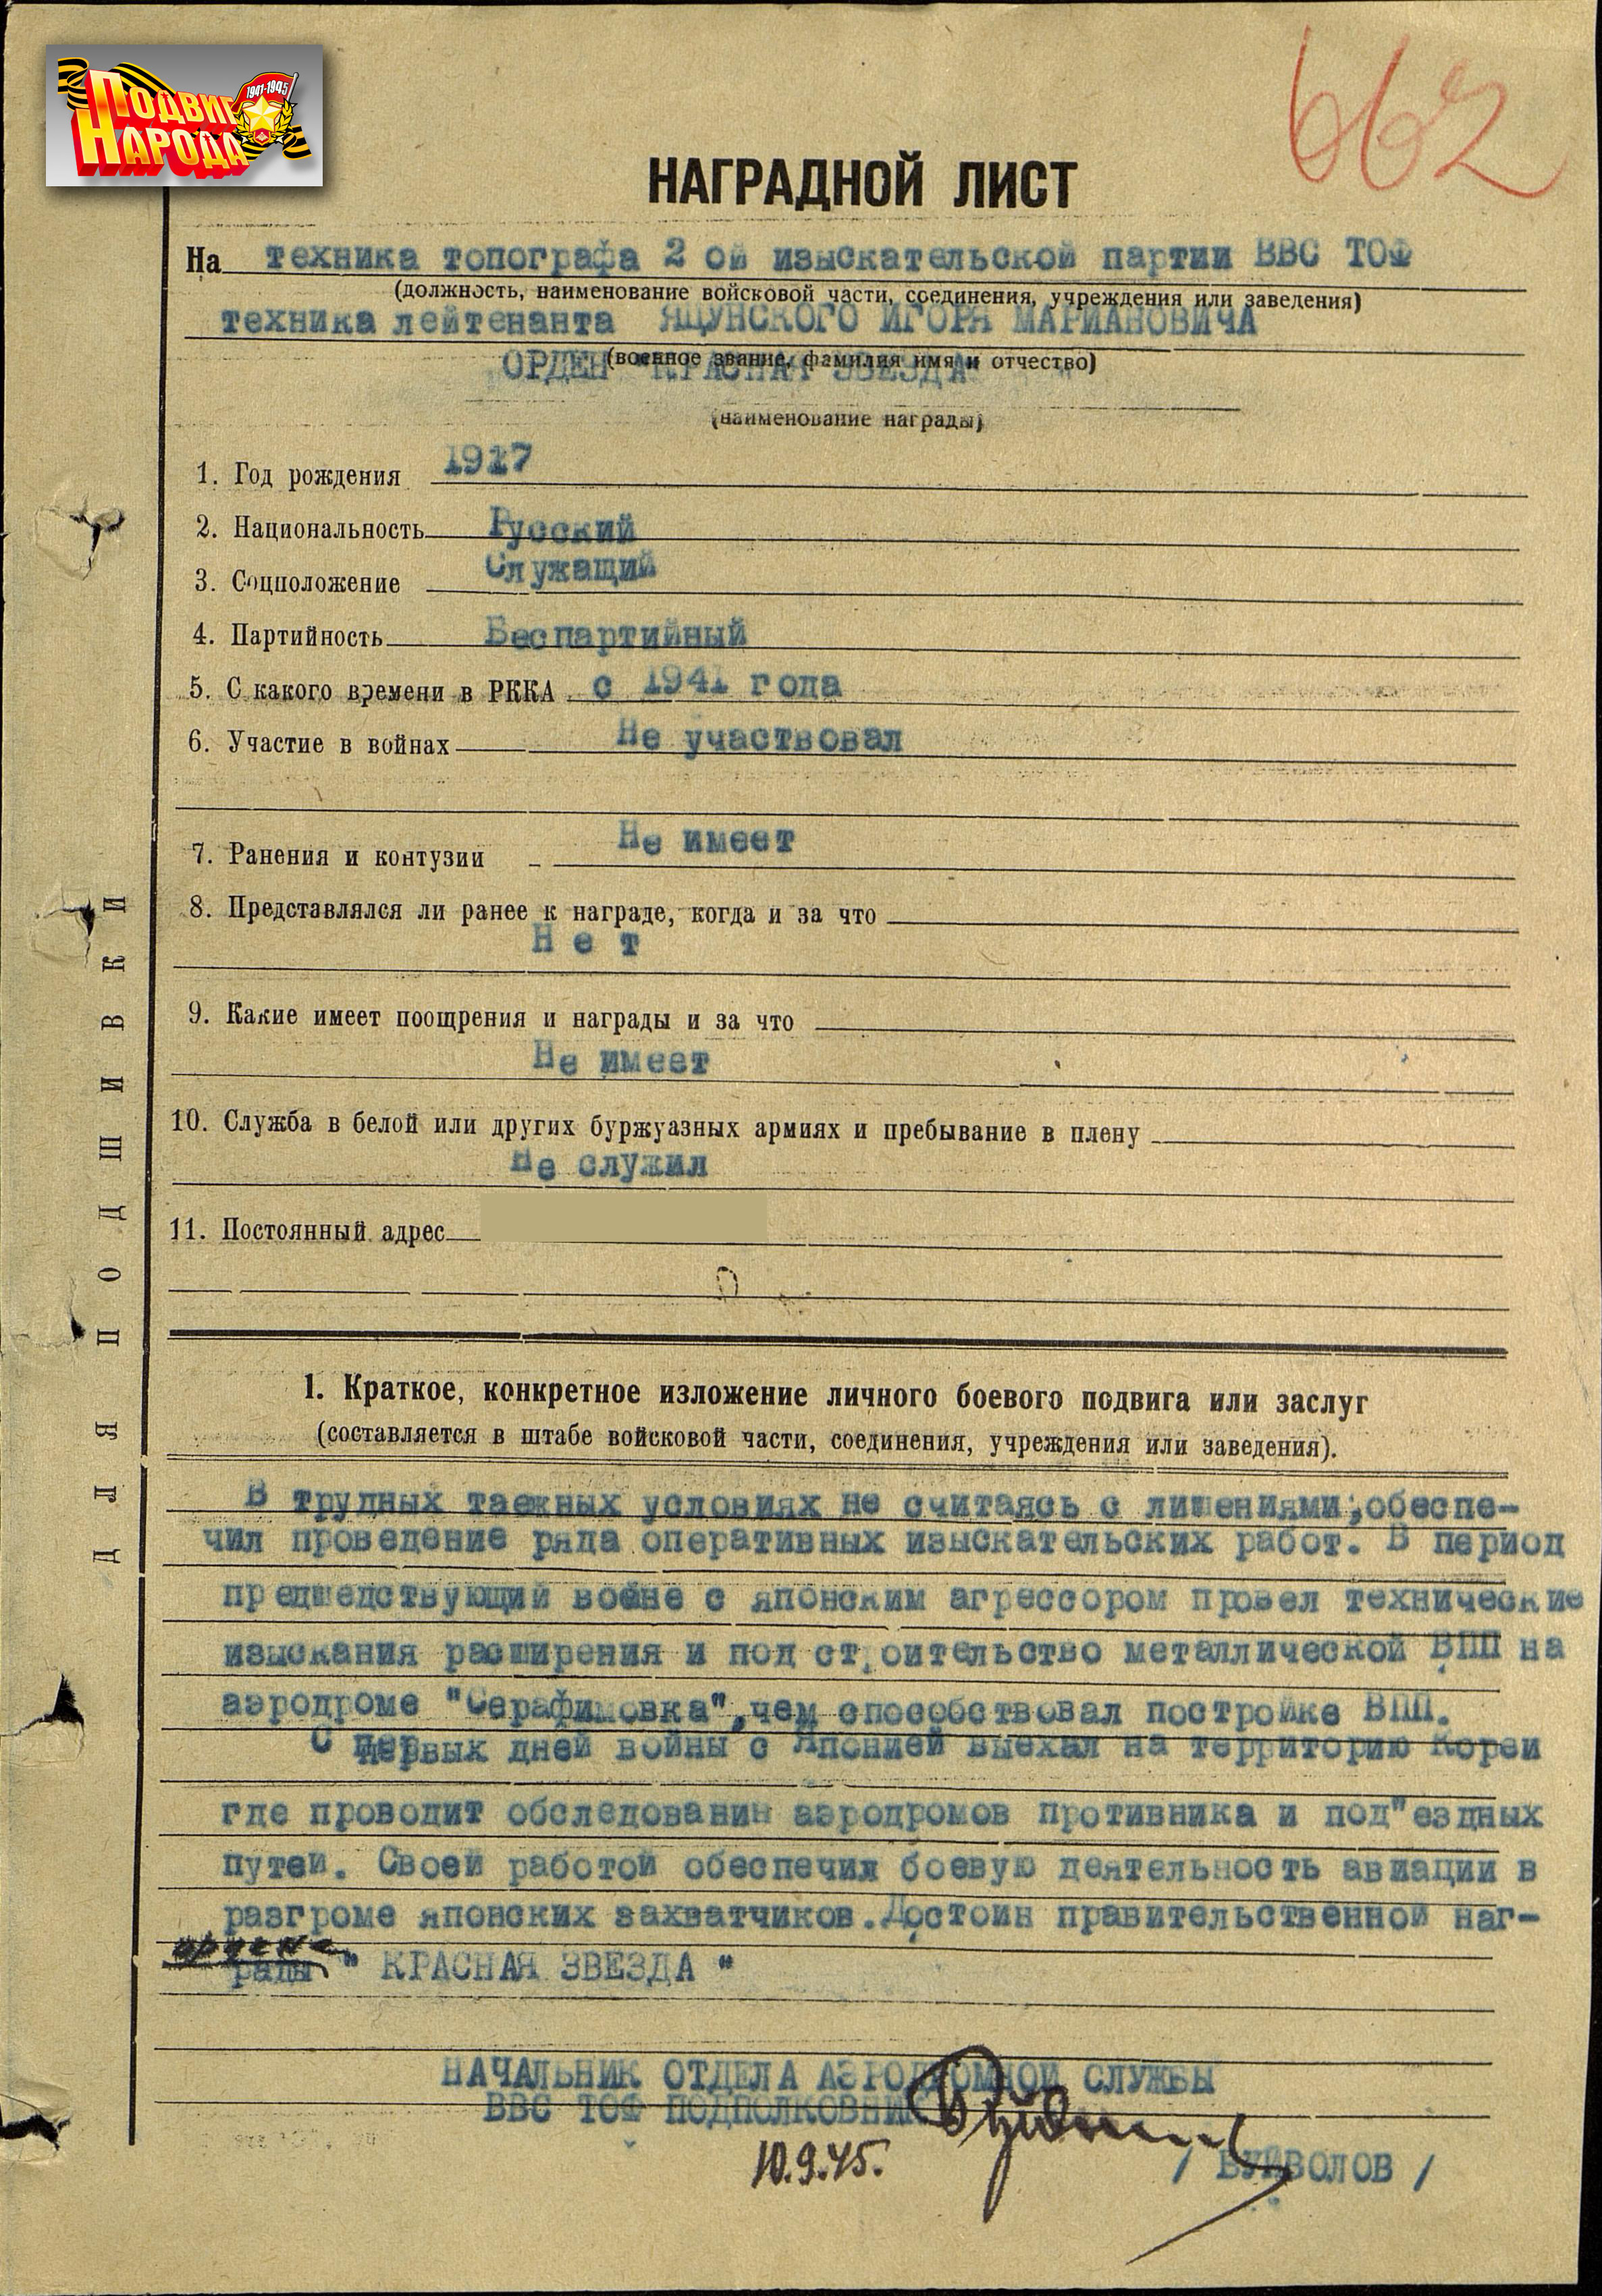 Фотокопия наградного листа И.М. Яцунского (фотография с сайта "Подвиг народа")